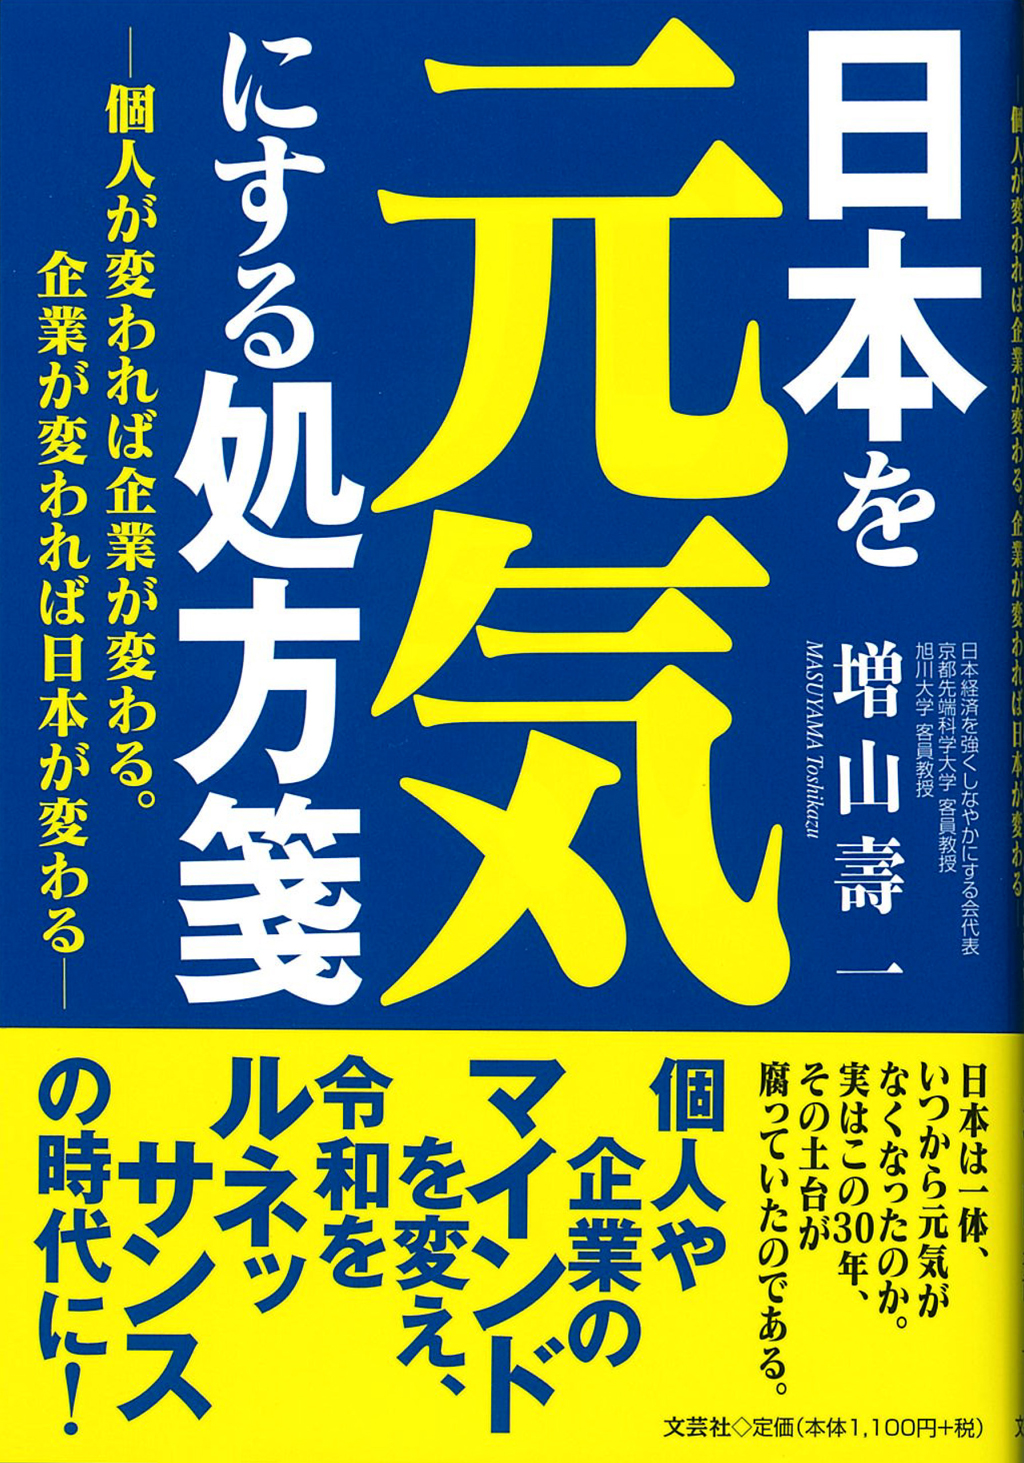 【日本を元気にする処方箋】2020年7月1日より新刊を発売！